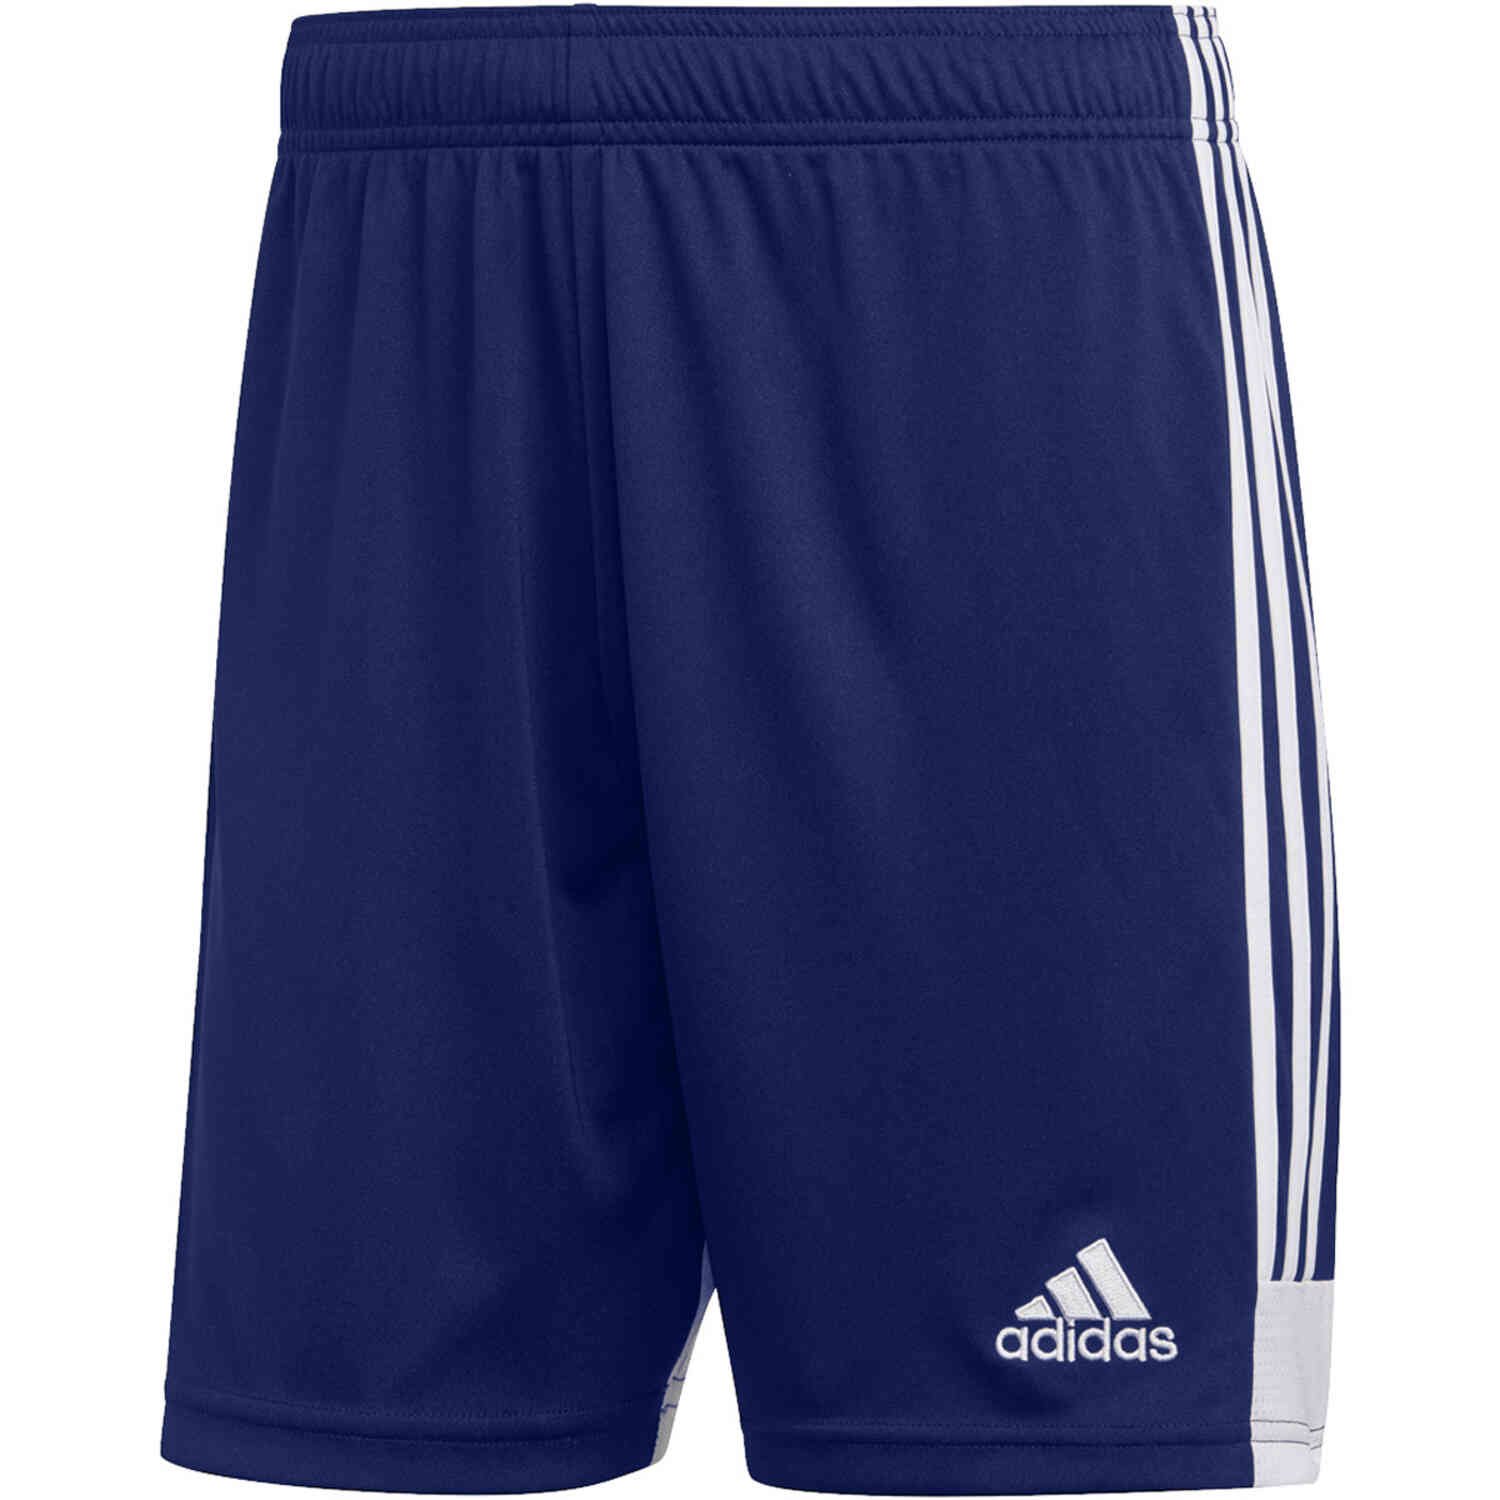 adidas Tastigo 19 Shorts - Dark Blue - SoccerPro